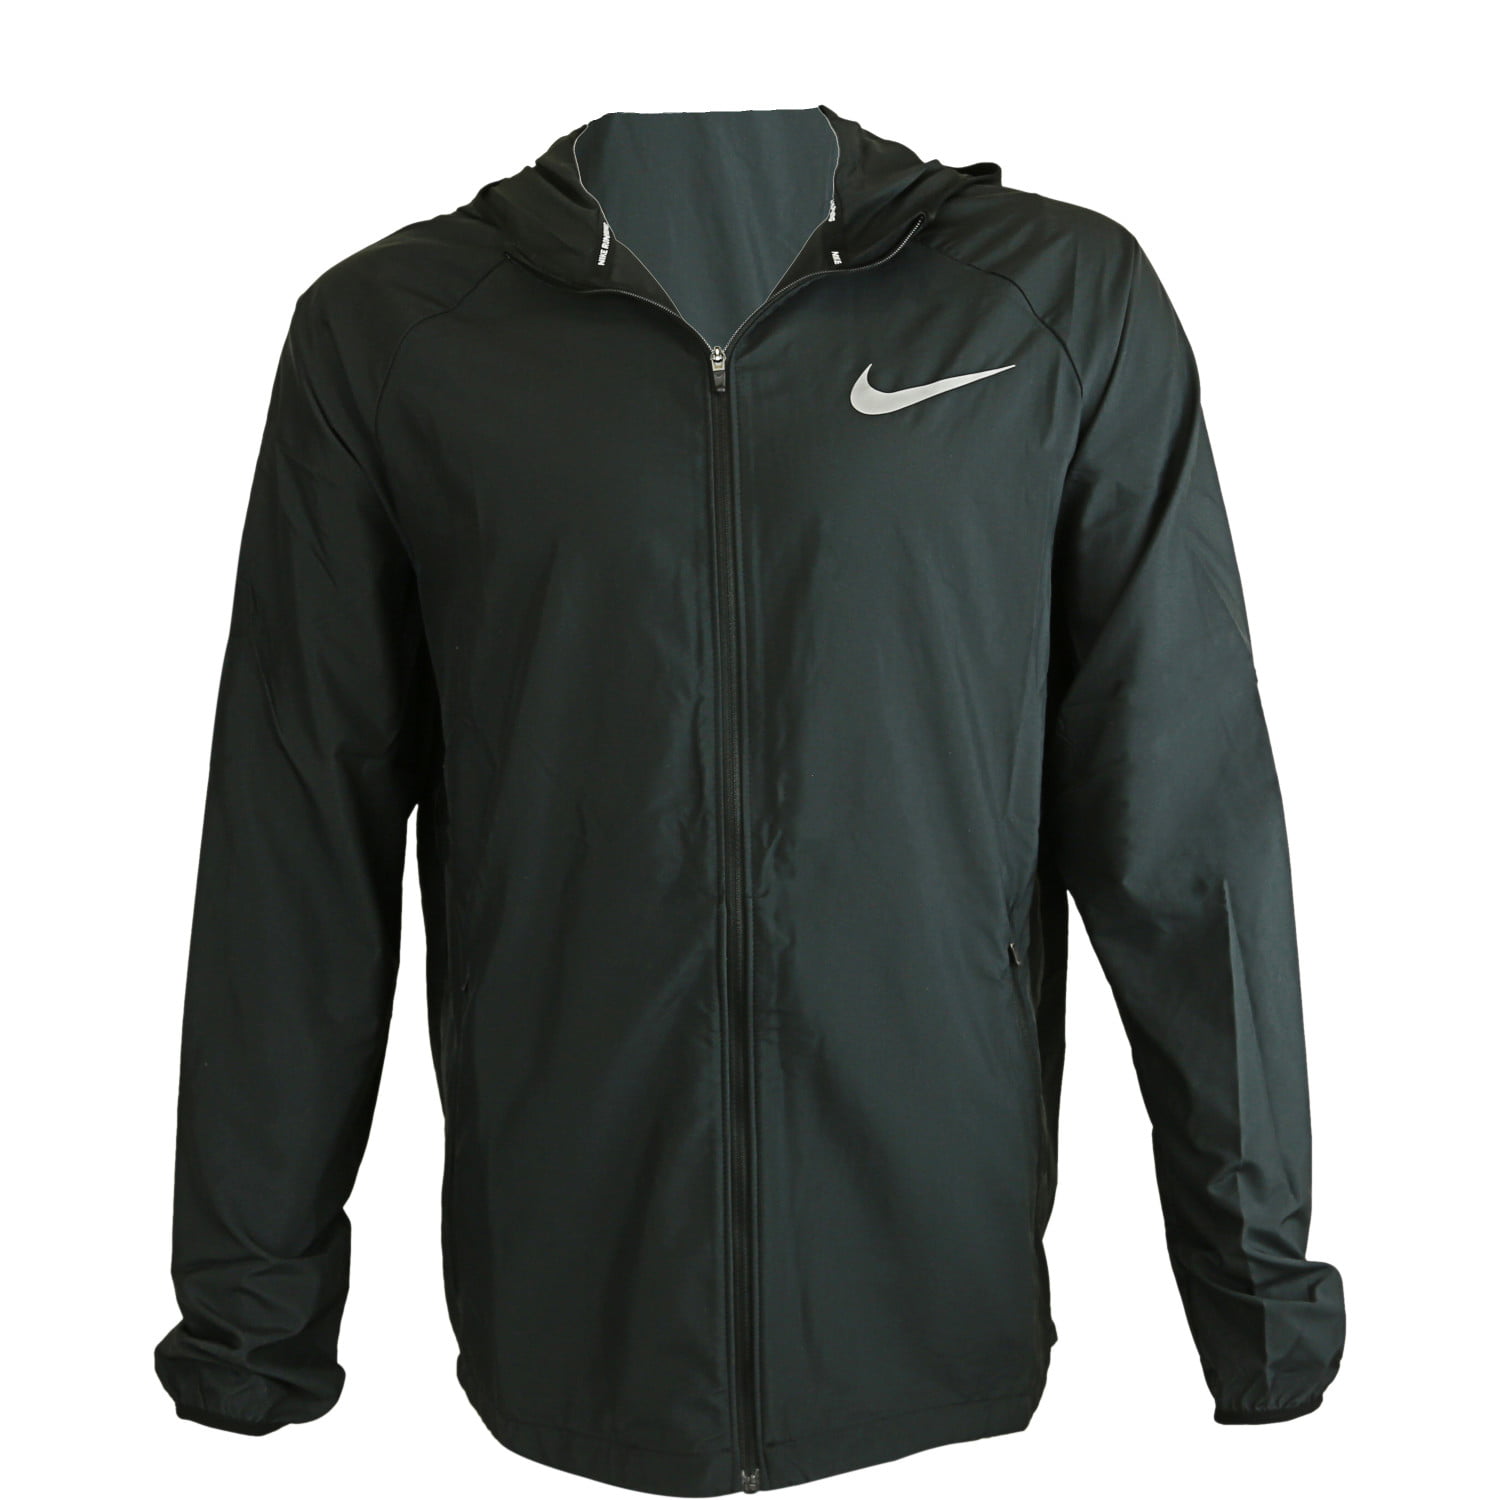 Nike - Nike Men's Black Sportswear Windrunner Jacket - XL - Walmart.com ...